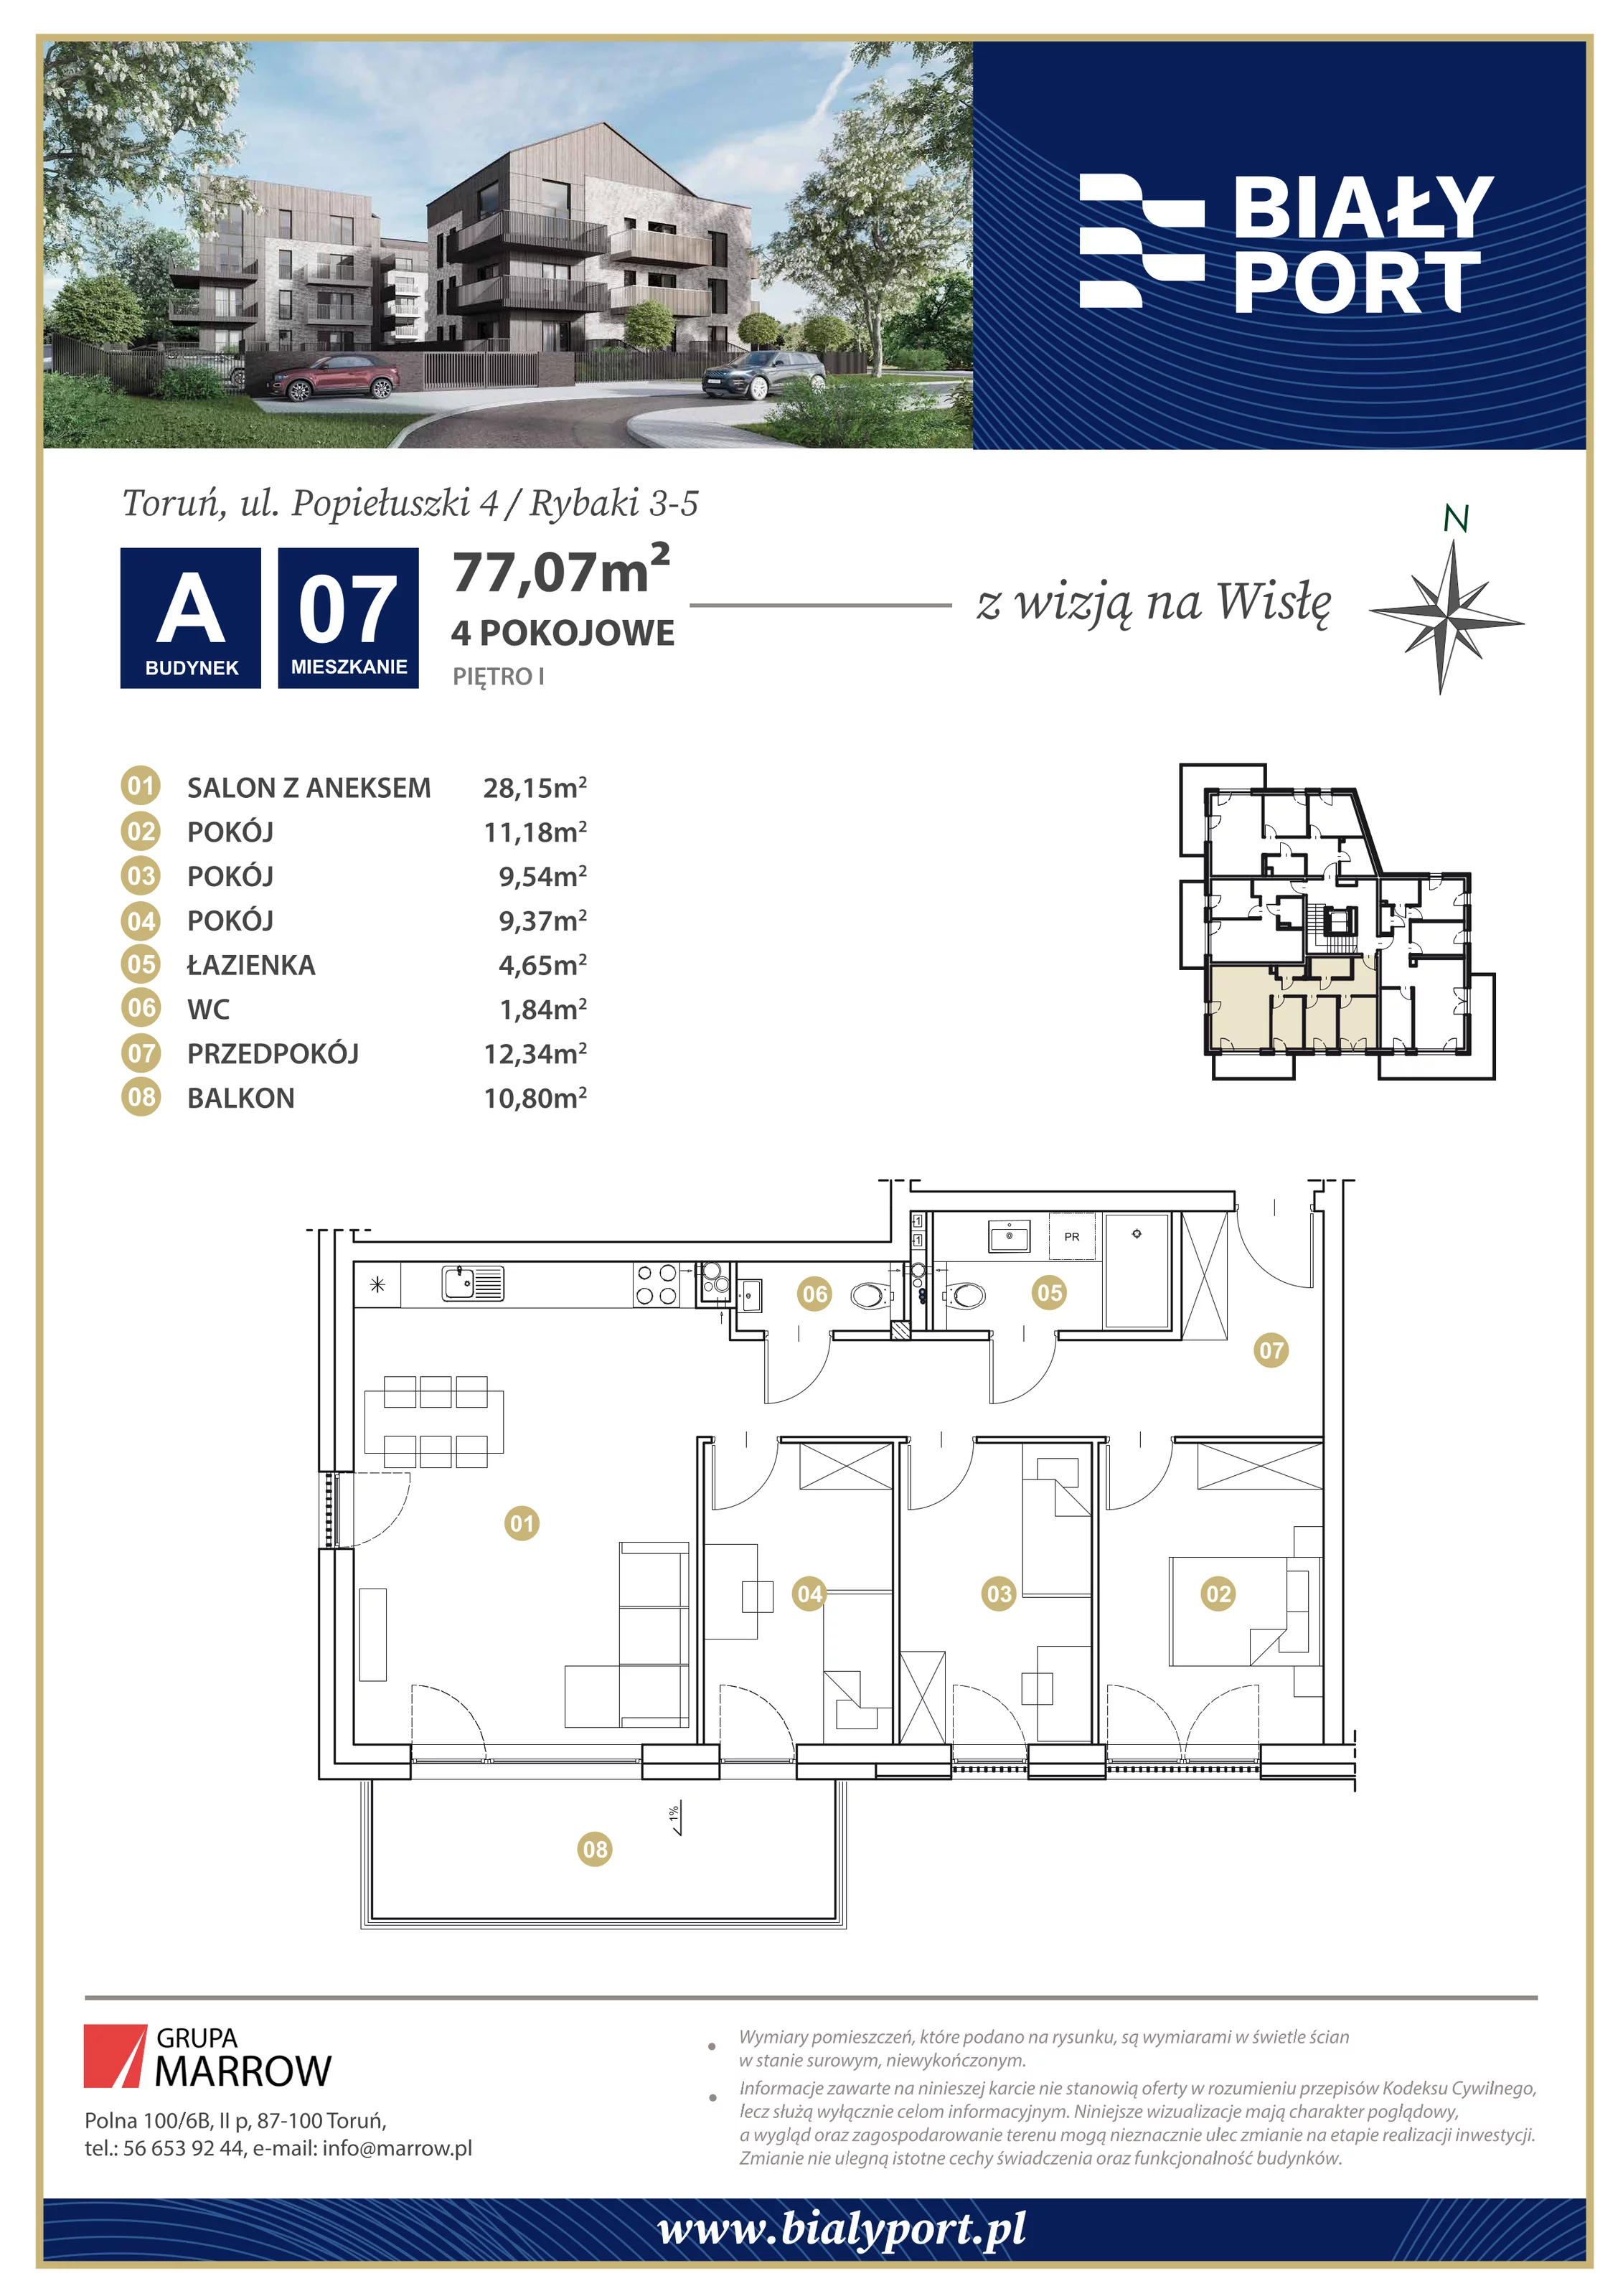 Mieszkanie 77,07 m², piętro 1, oferta nr 7, Biały Port, Toruń, Rybaki, ul. Popiełuszki 4